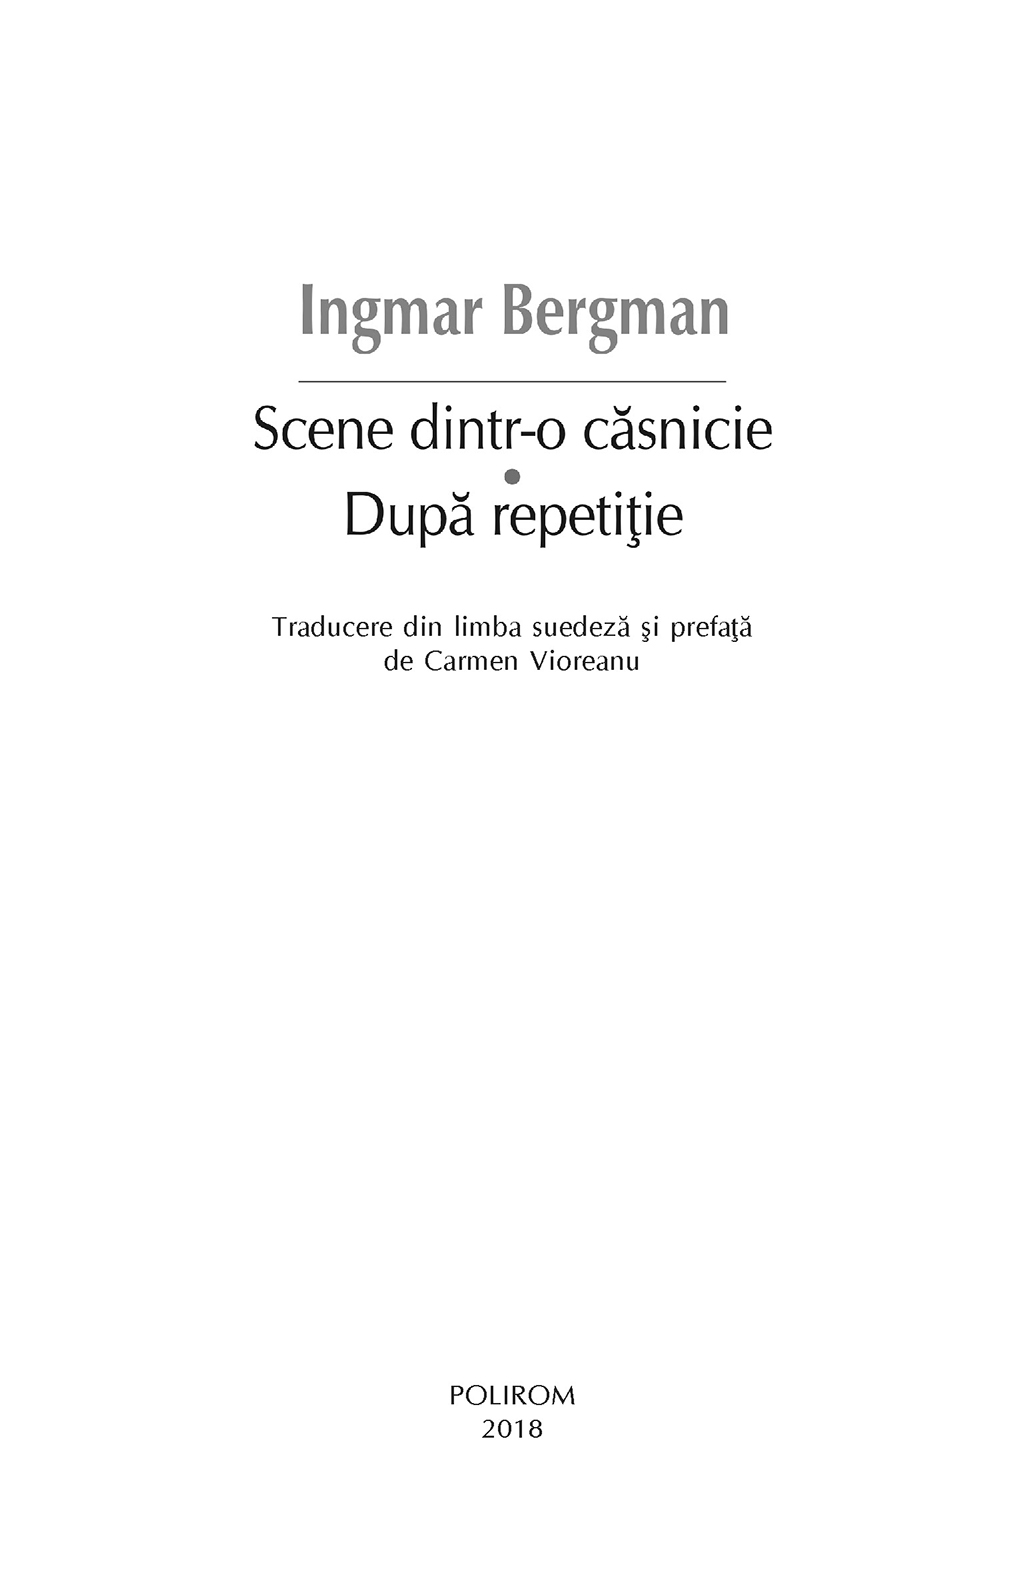 Scene dintr-o casnicie. Dupa repetitie | Ingmar Bergman - 5